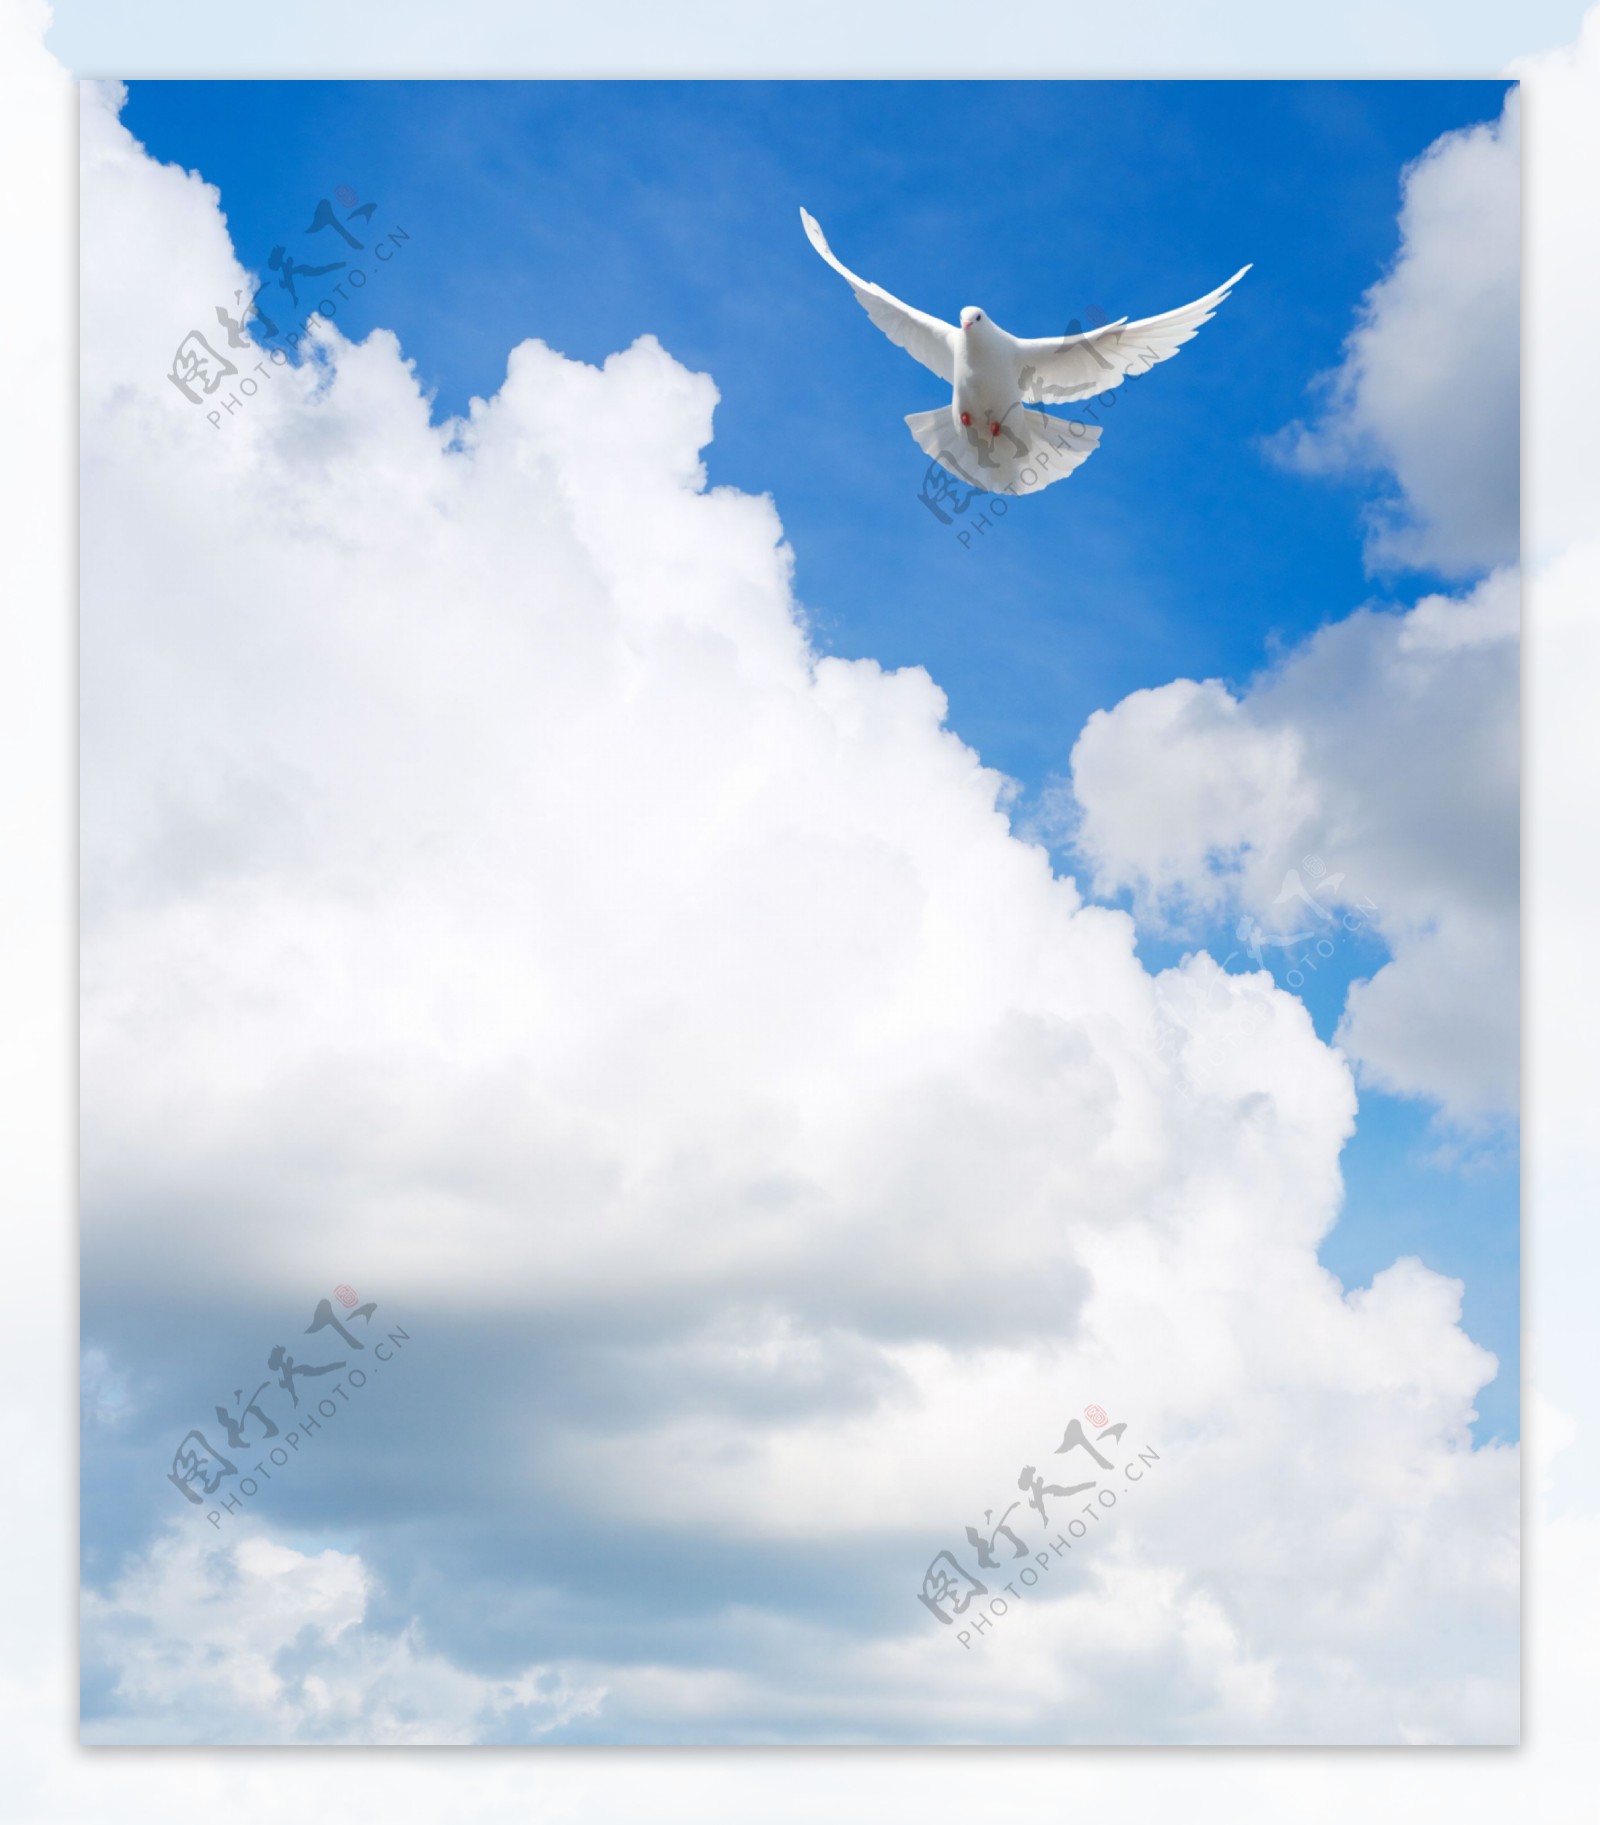 天空中飞翔的白鸽图片